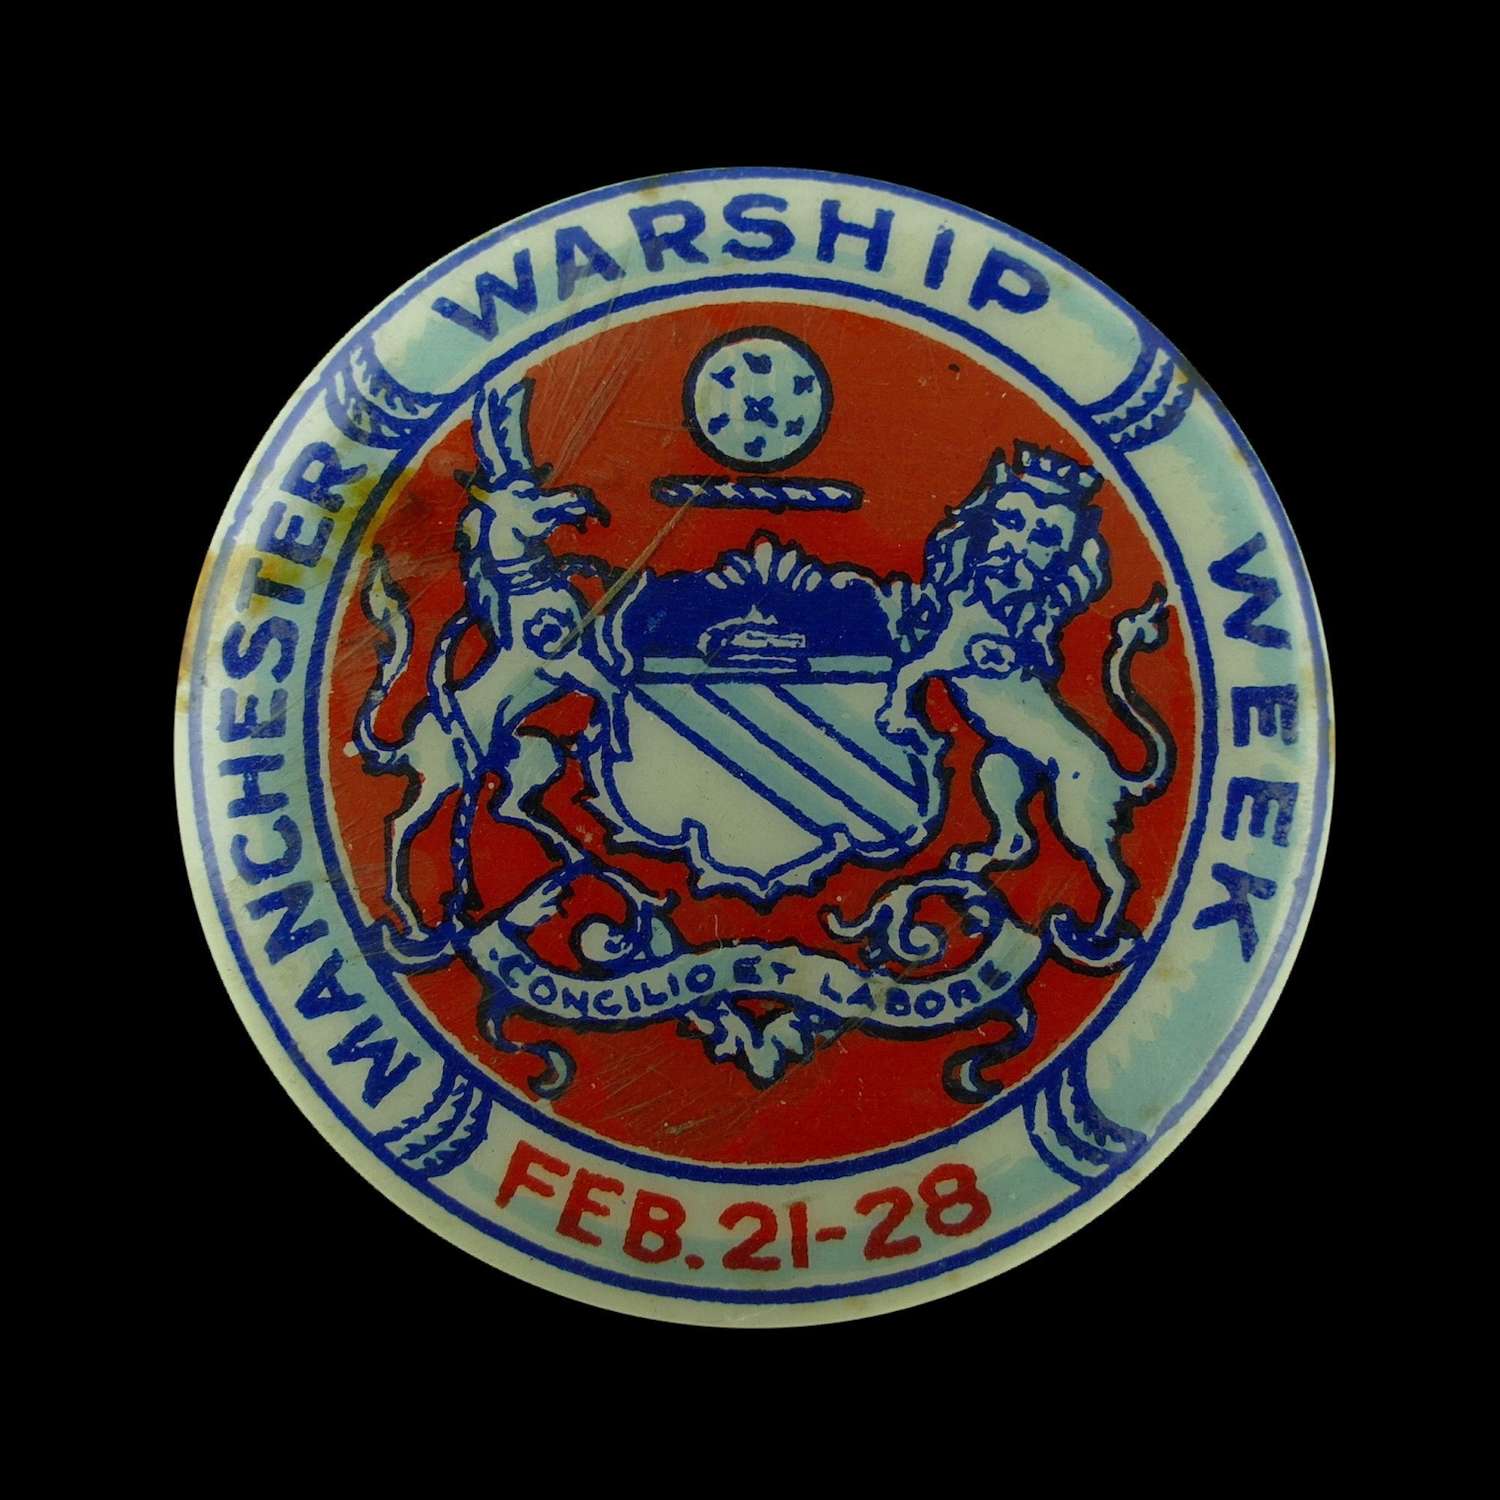 Manchester Warship Week badge